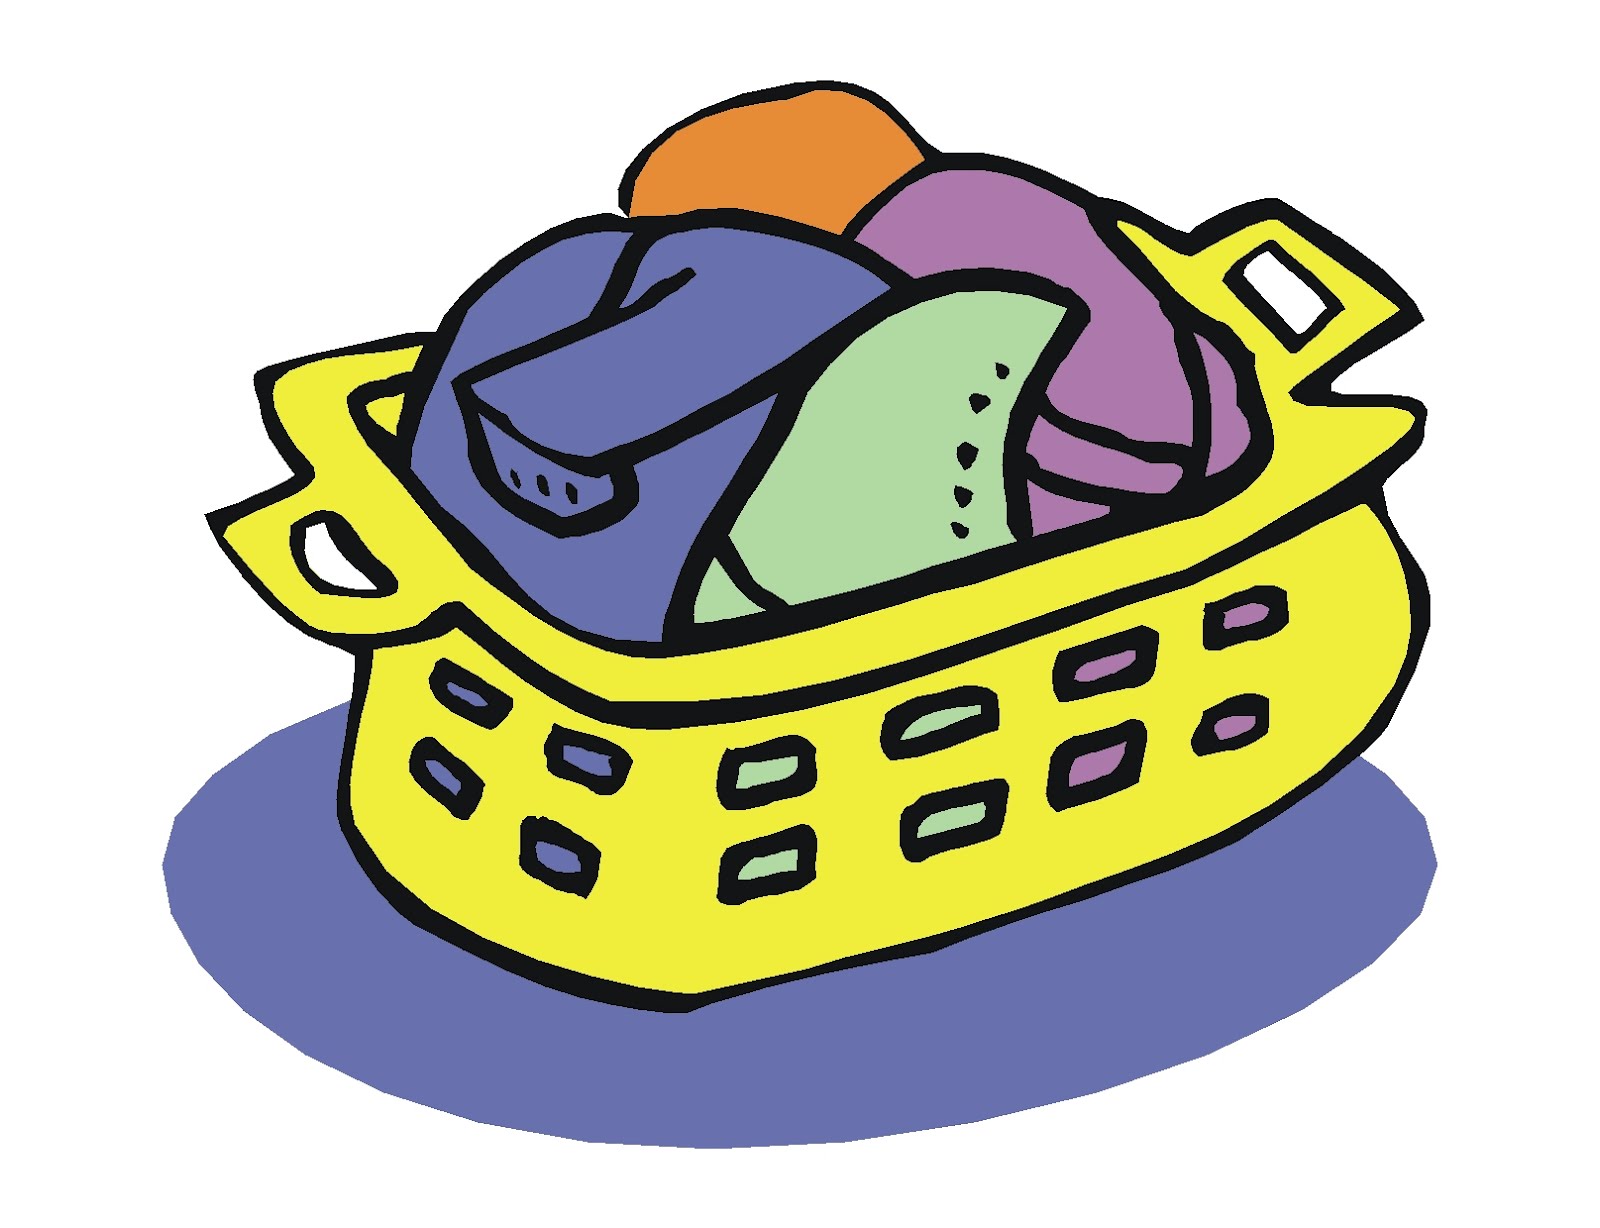 clothes basket clipart - photo #1